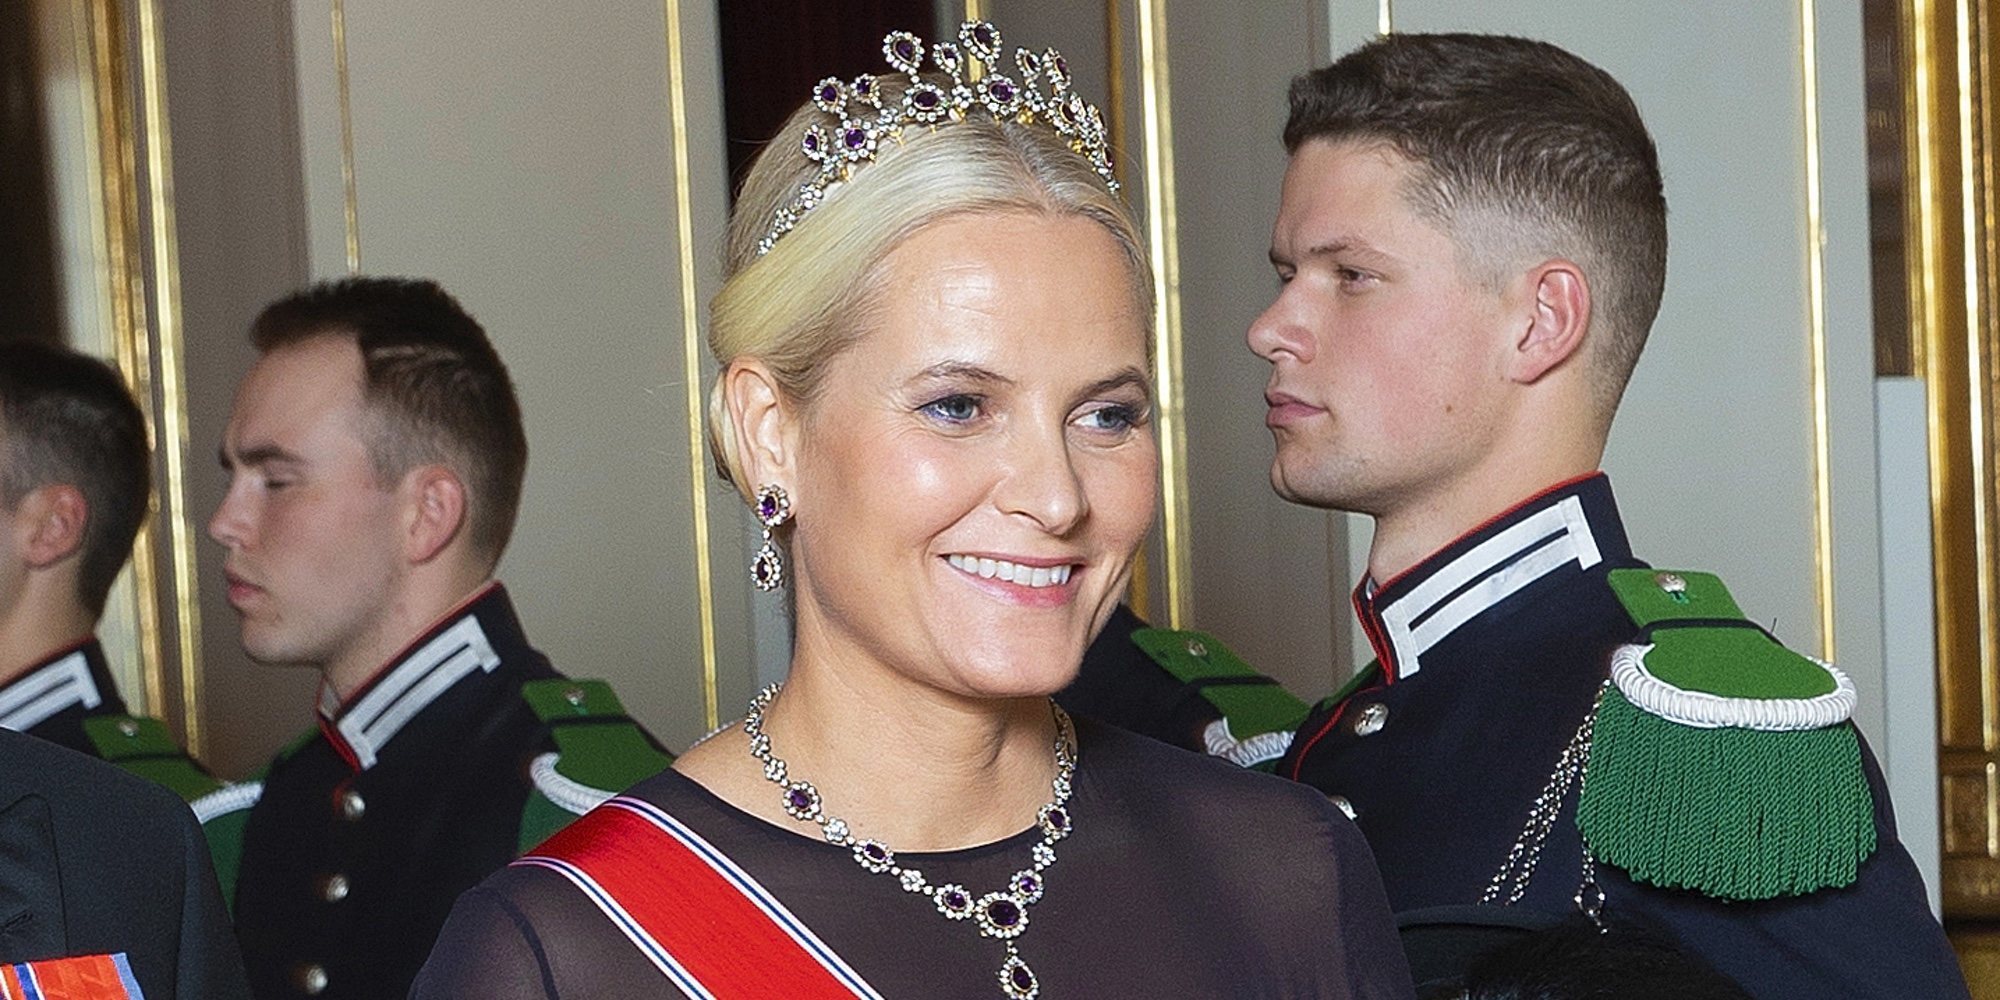 La Princesa Mette-Marit de Noruega reaparece en público tras anunciar su enfermedad